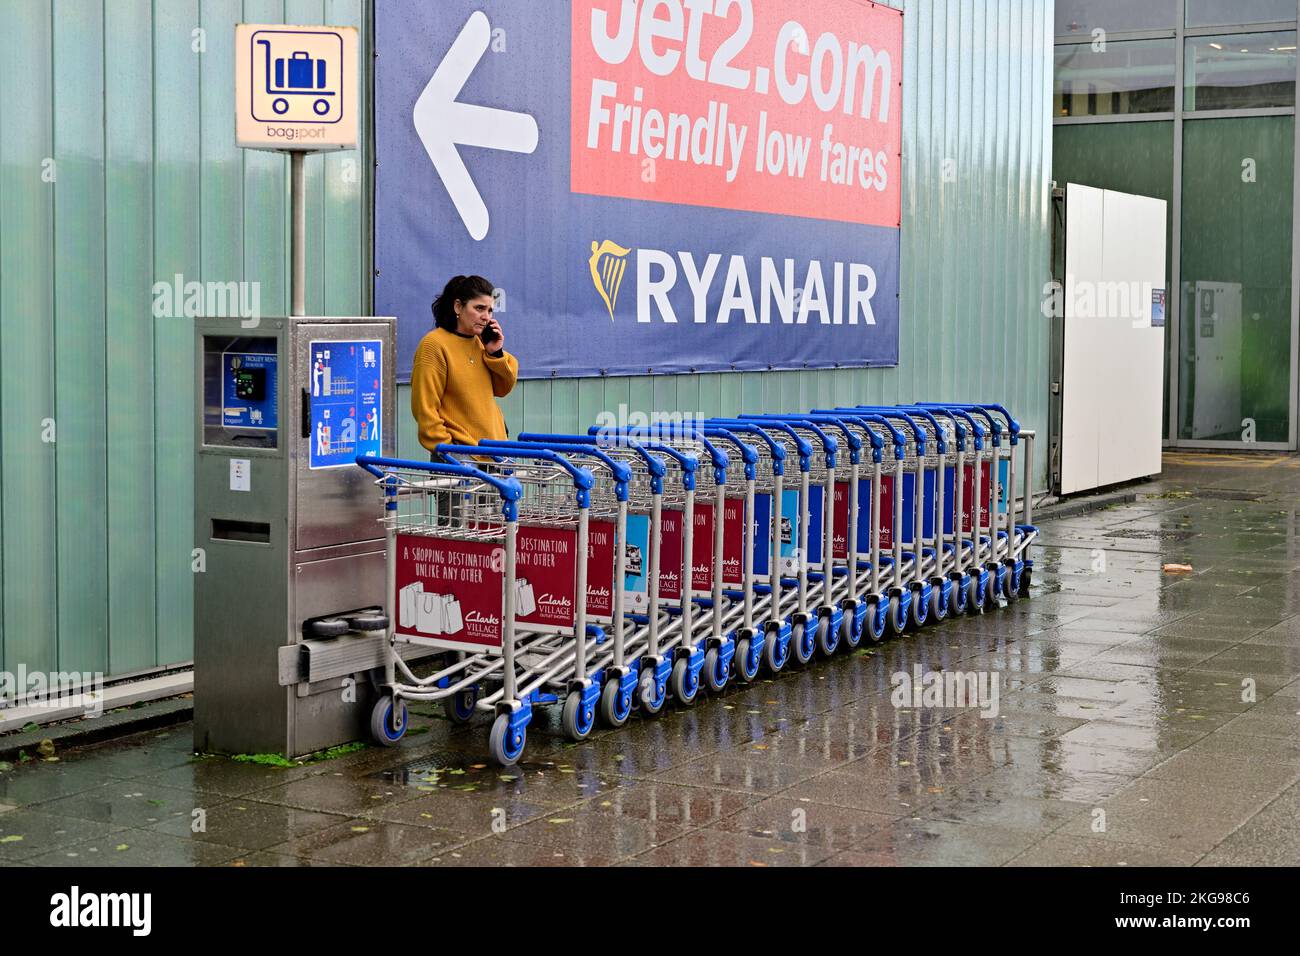 Noleggio di carrelli per bagagli presso il terminal dell'aeroporto di Bristol, pagamento in monete necessario per rilasciare i carrelli per l'uso, Regno Unito Foto Stock